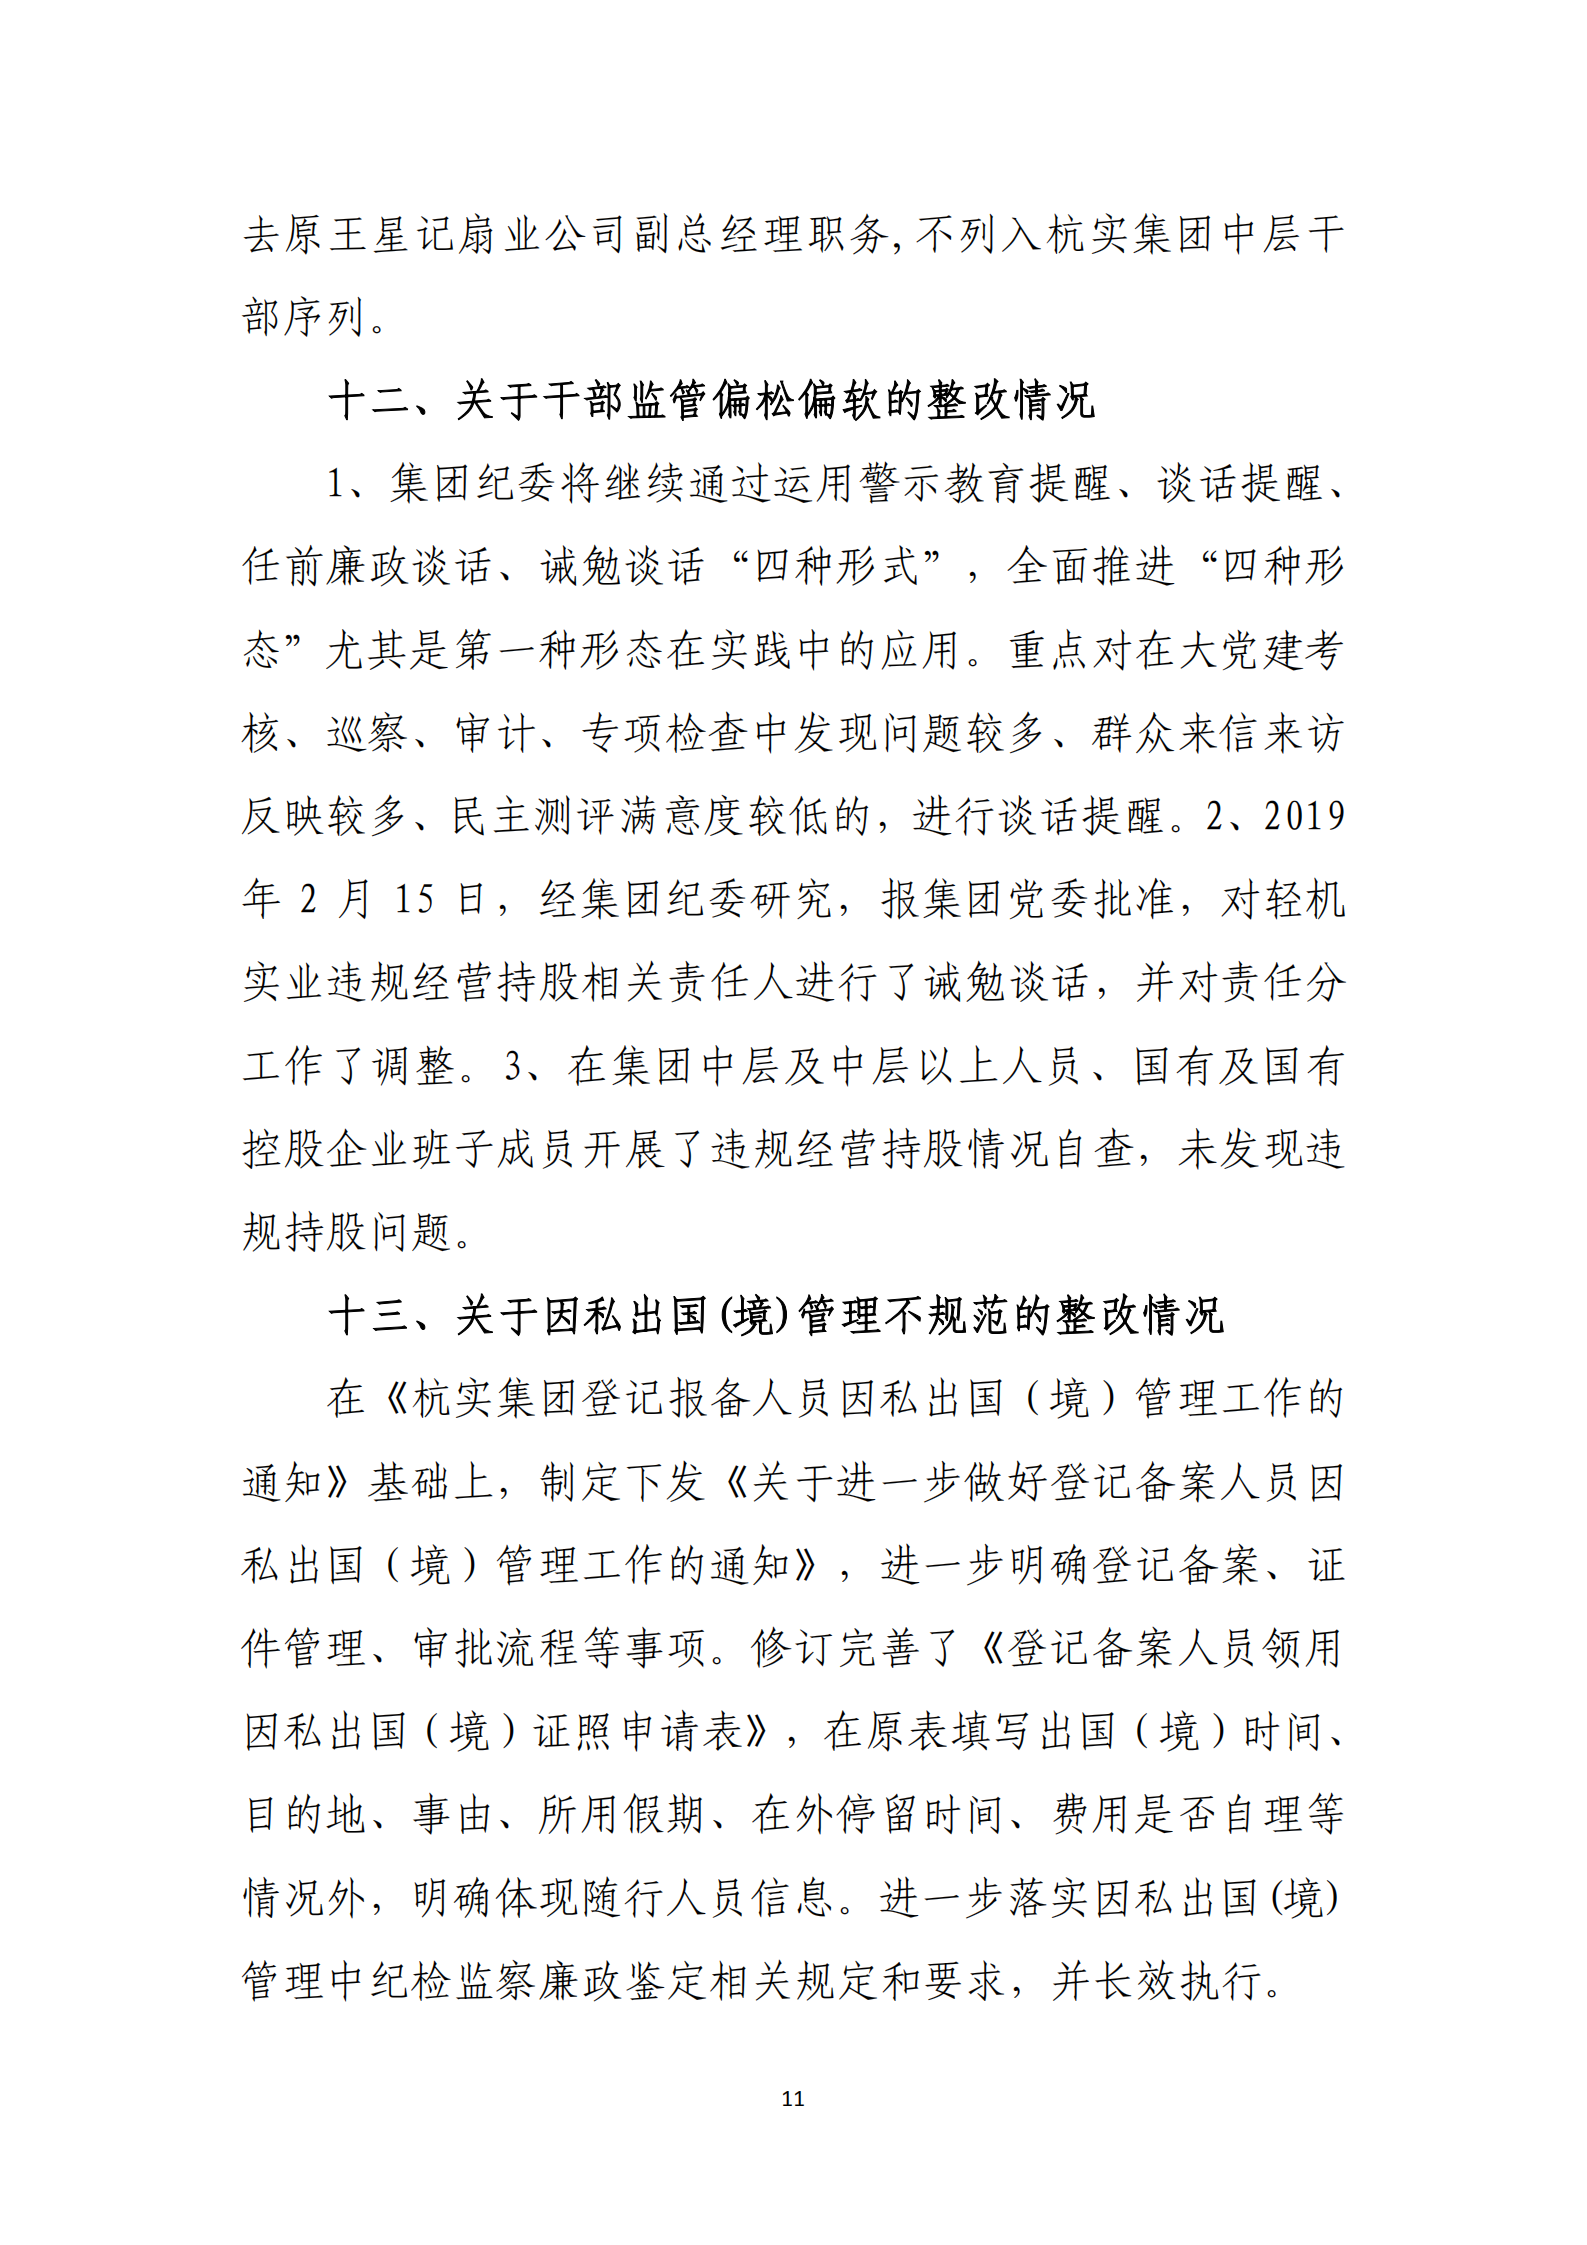 杭实集团党委关于巡察整改情况的通报_10.png